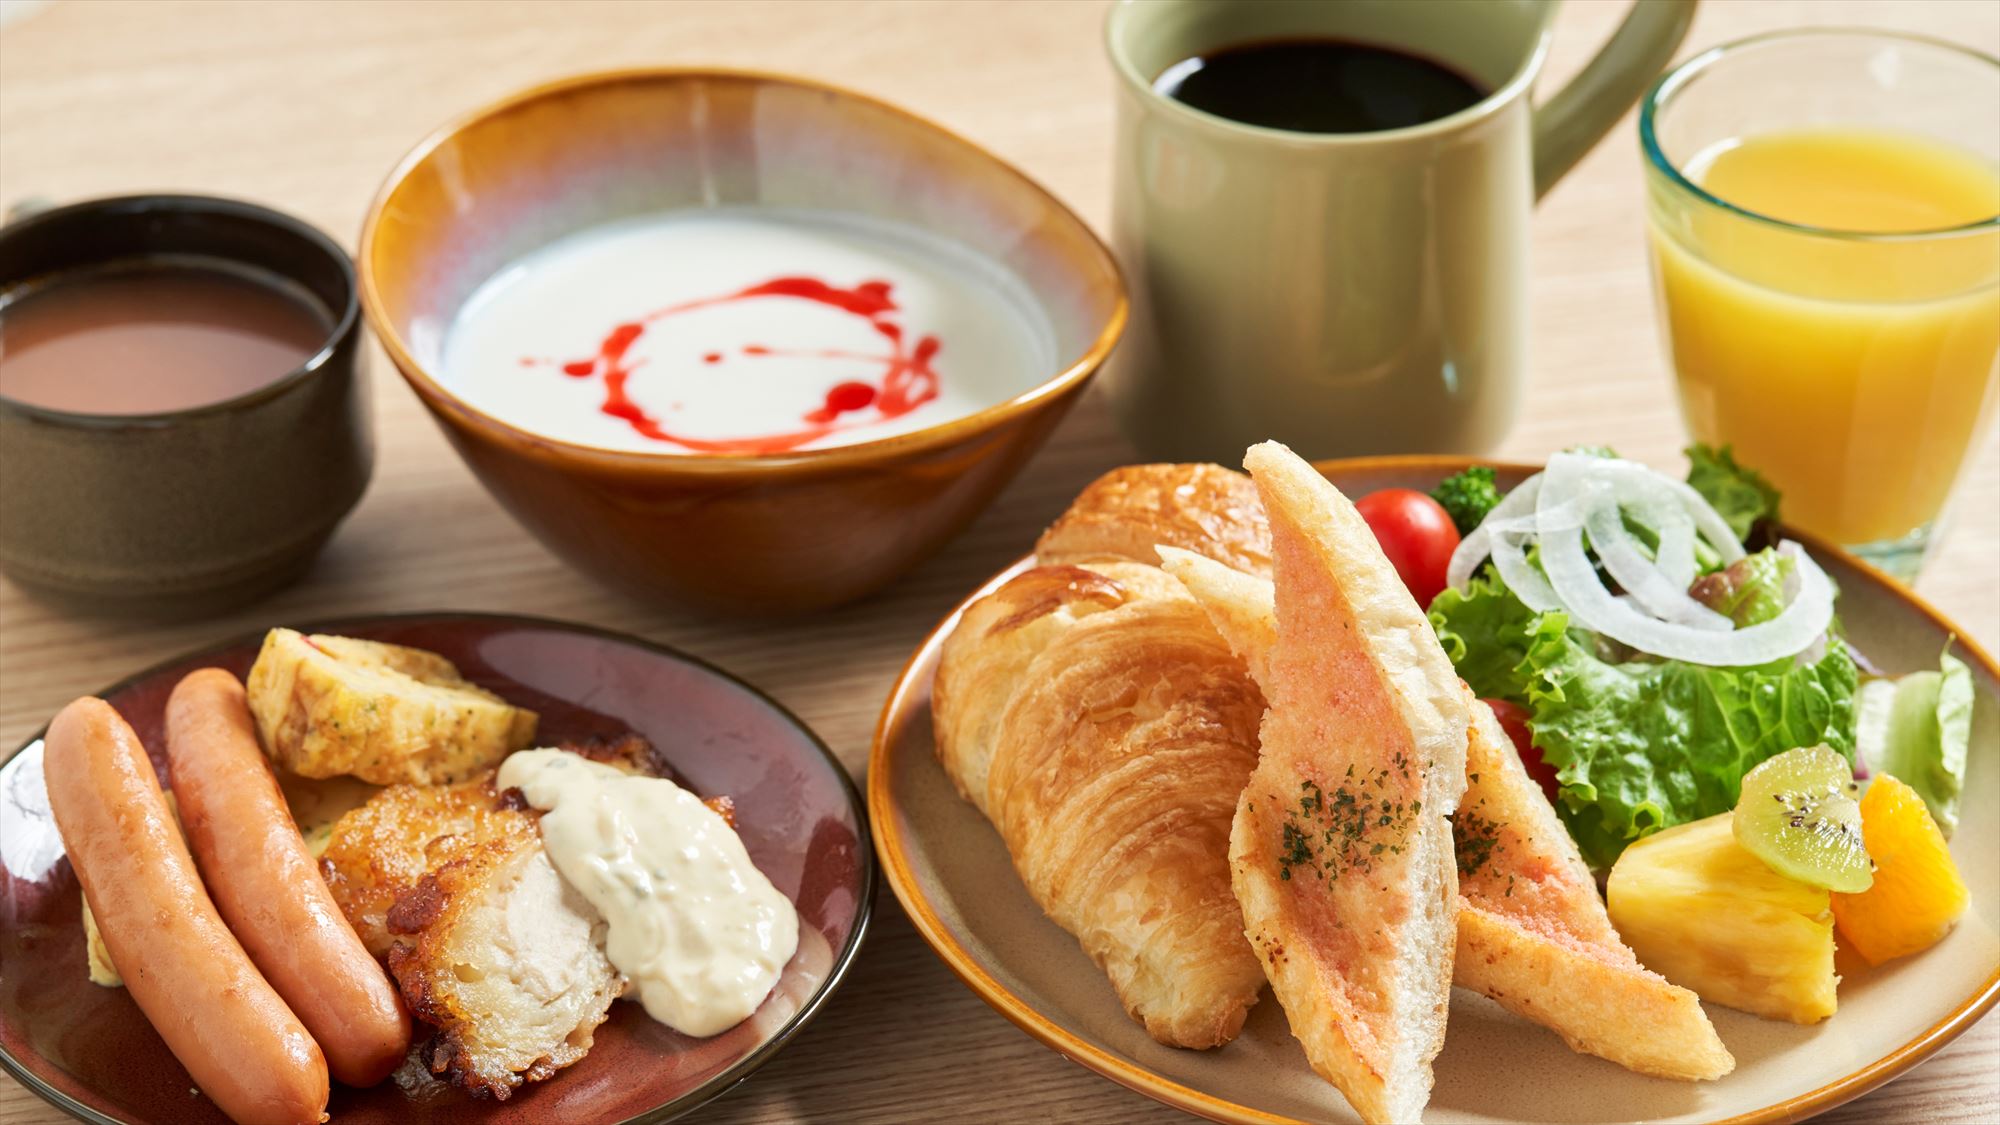 【朝食】地元の新鮮な食材を使った、ビュッフェ形式のモーニングをお楽しみください。